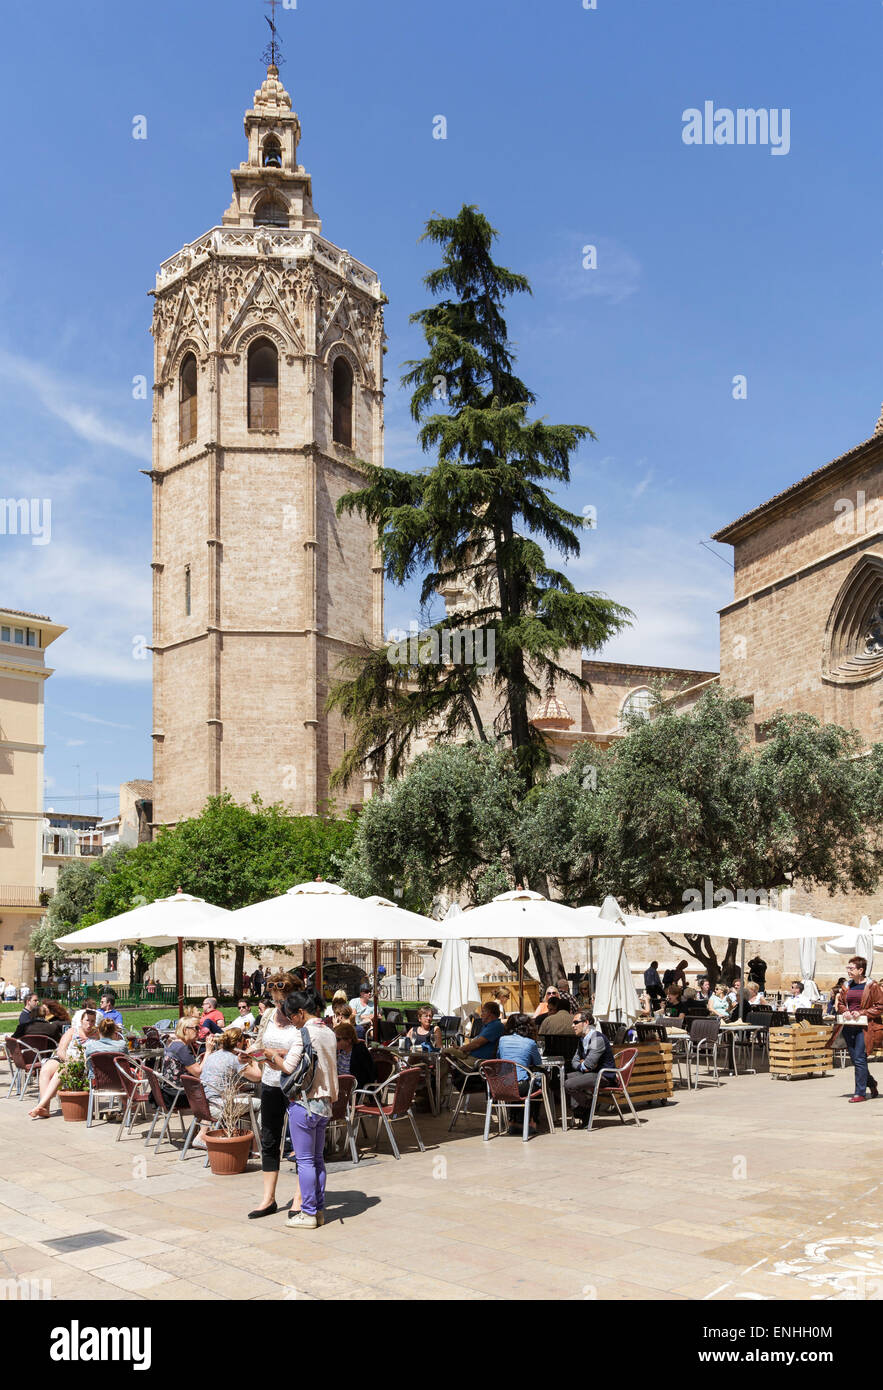 Cafeterías y turistas en frente de la Catedral, Valencia, España Foto de stock